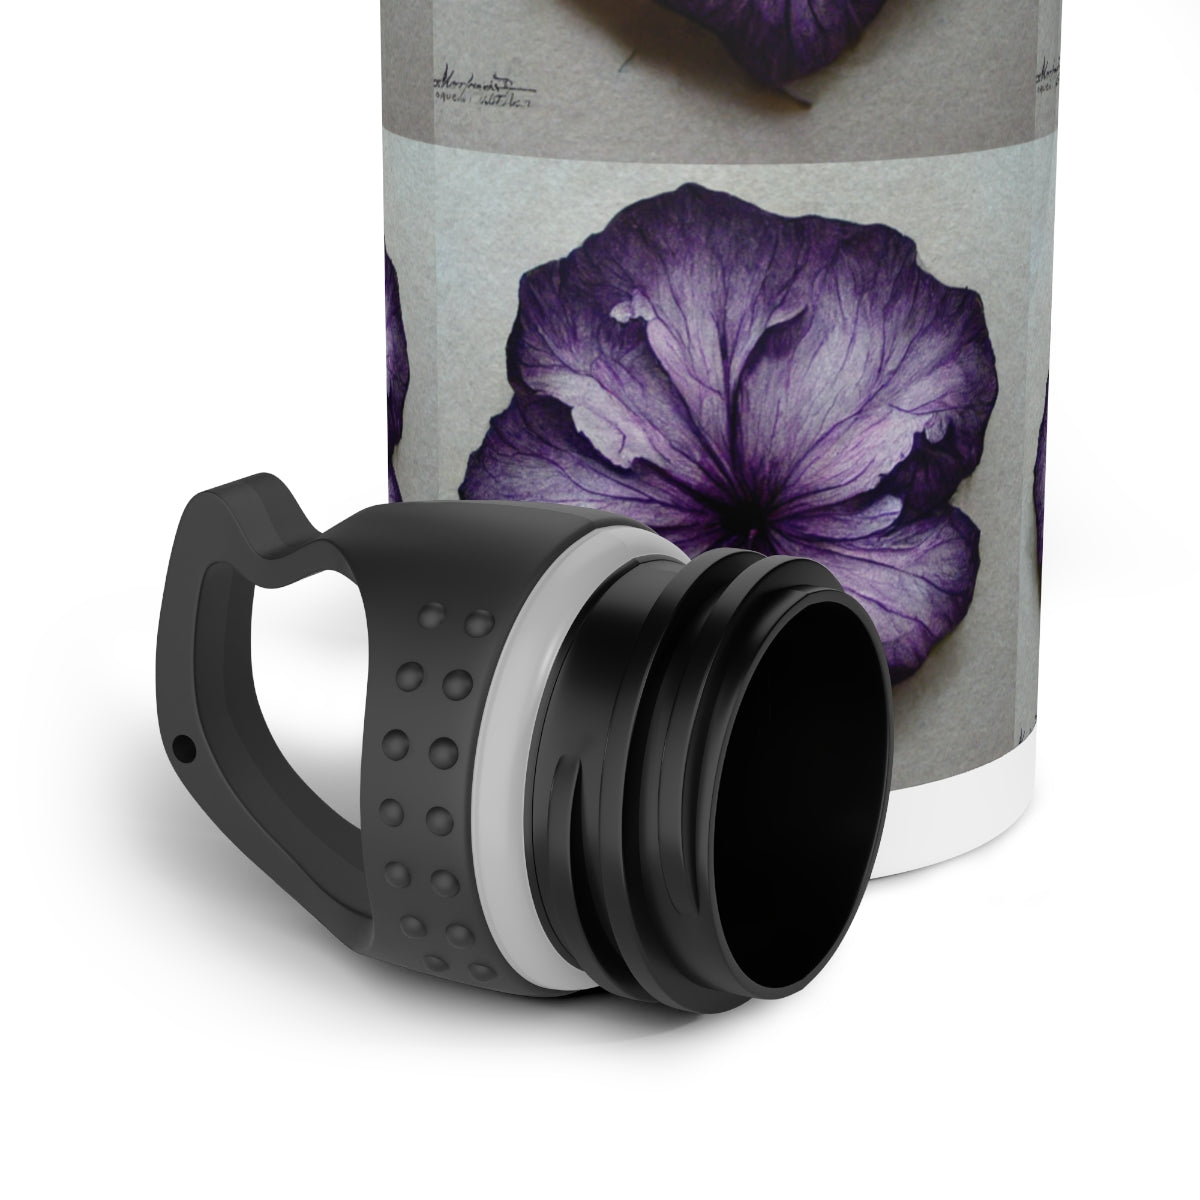 Purple Flowers - Stainless Steel Water Bottle